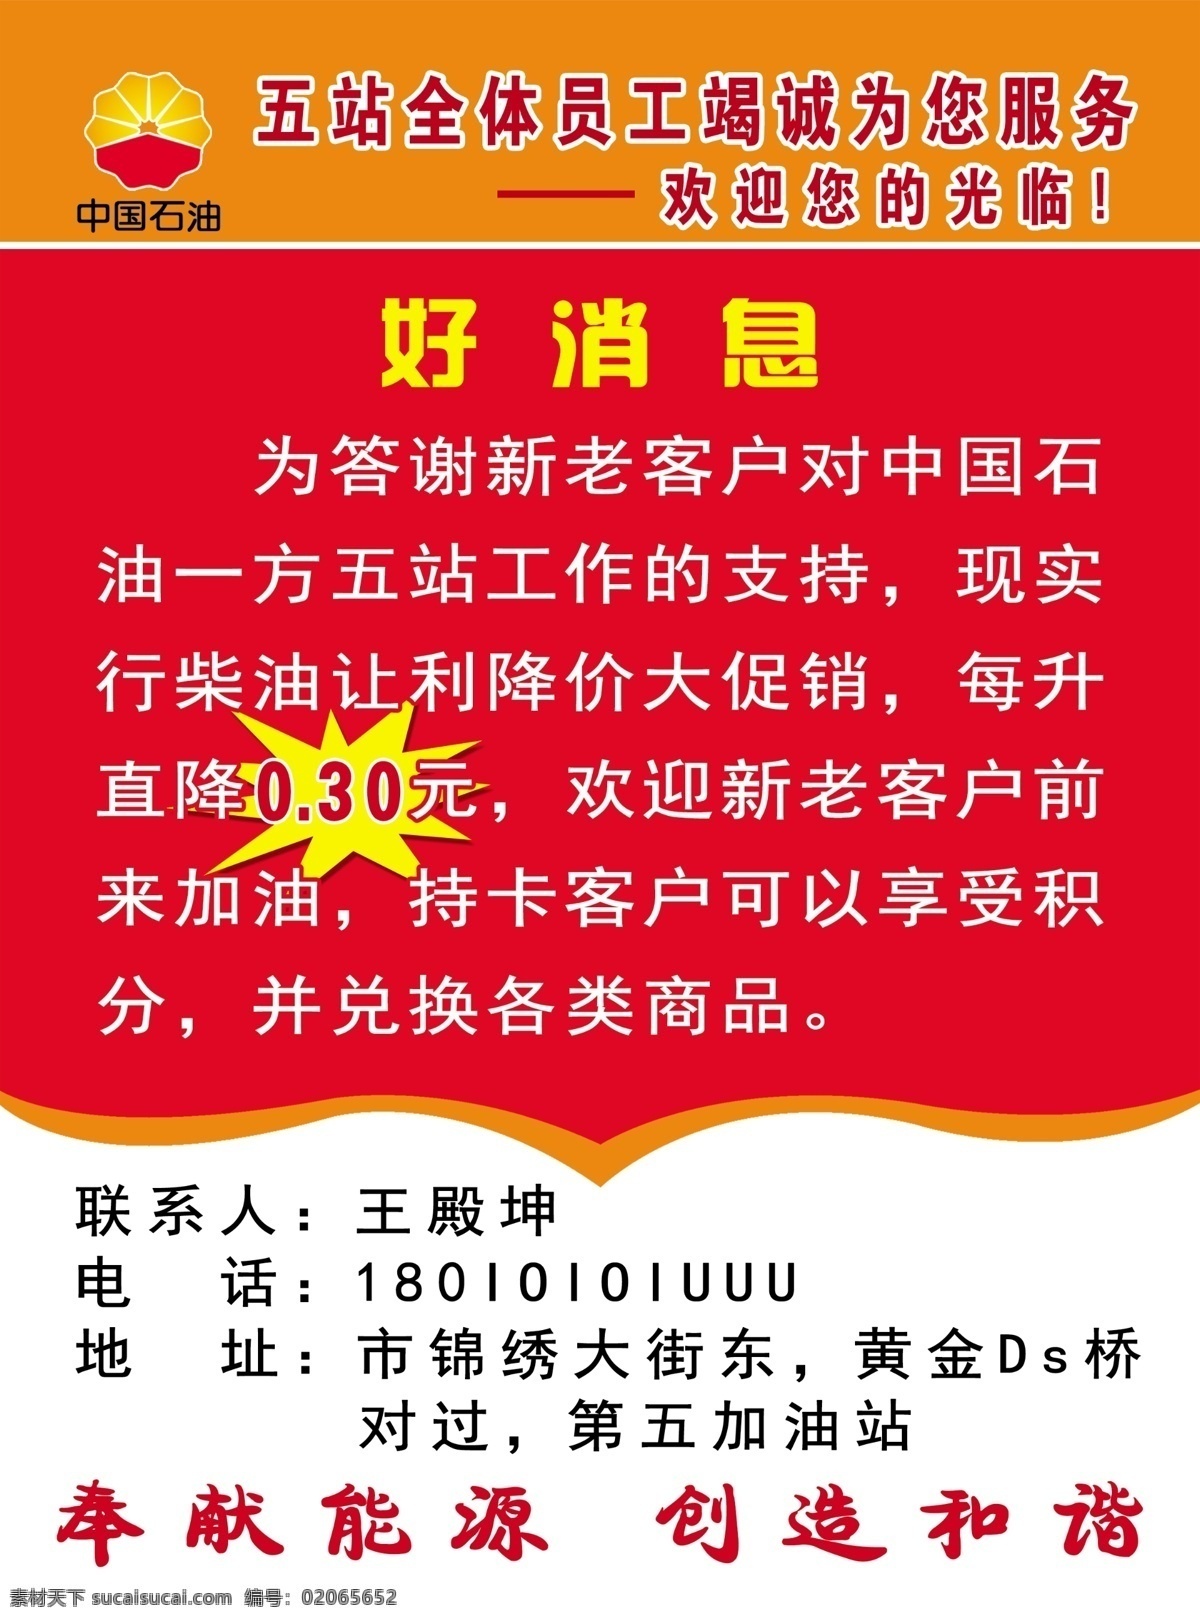 加油站宣传单 加油站 宣传单 dm单 加油宣传单 中国石油 好消息 加油站彩页 彩页宣传 红色宣传单 名片 印刷 类 dm宣传单